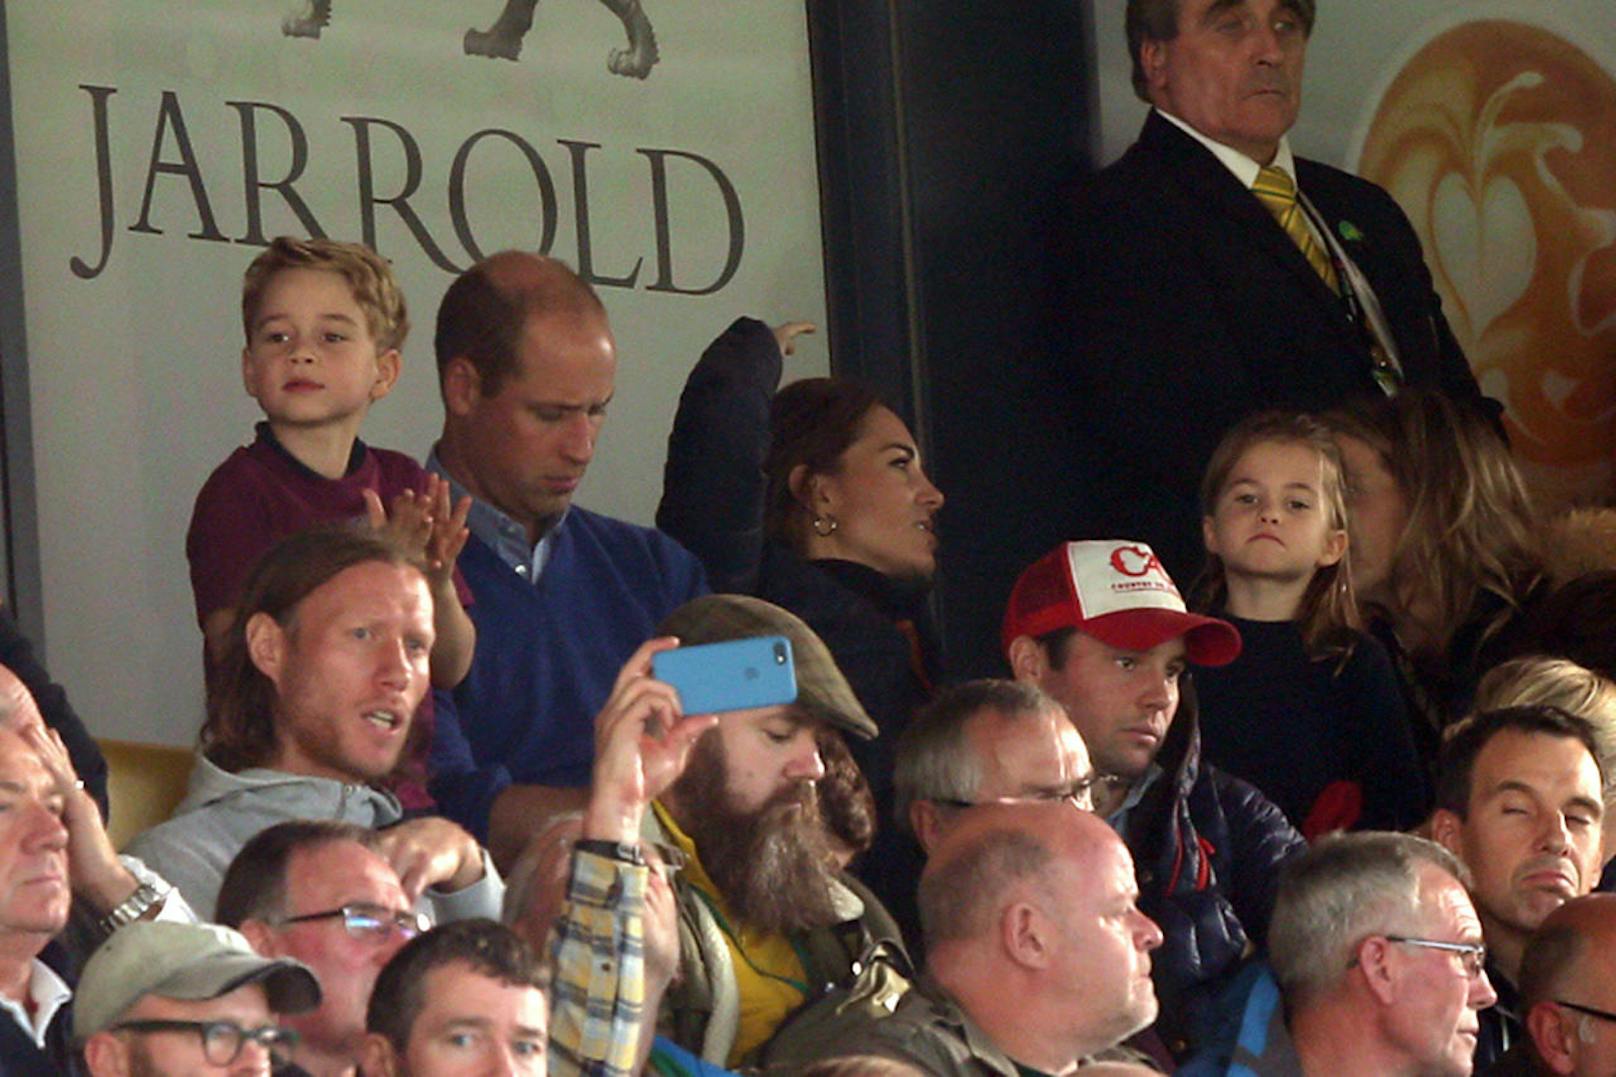 05.10.2019: Norwich City vs Aston Villa, im Publikum sitzt der größte kleinste Fan, den man sich vorstellen kann. Prinz William ging mit seiner Frau Kate, Prinz George und Charlotte zum Match. Mehr Fotos und das entzückende Video vom jubenlden George <a href="https://www.heute.at/s/prinz-george-william-kate-charlotte-bei-aston-villa-fusball-jubel-59622493">gibt's HIER</a>